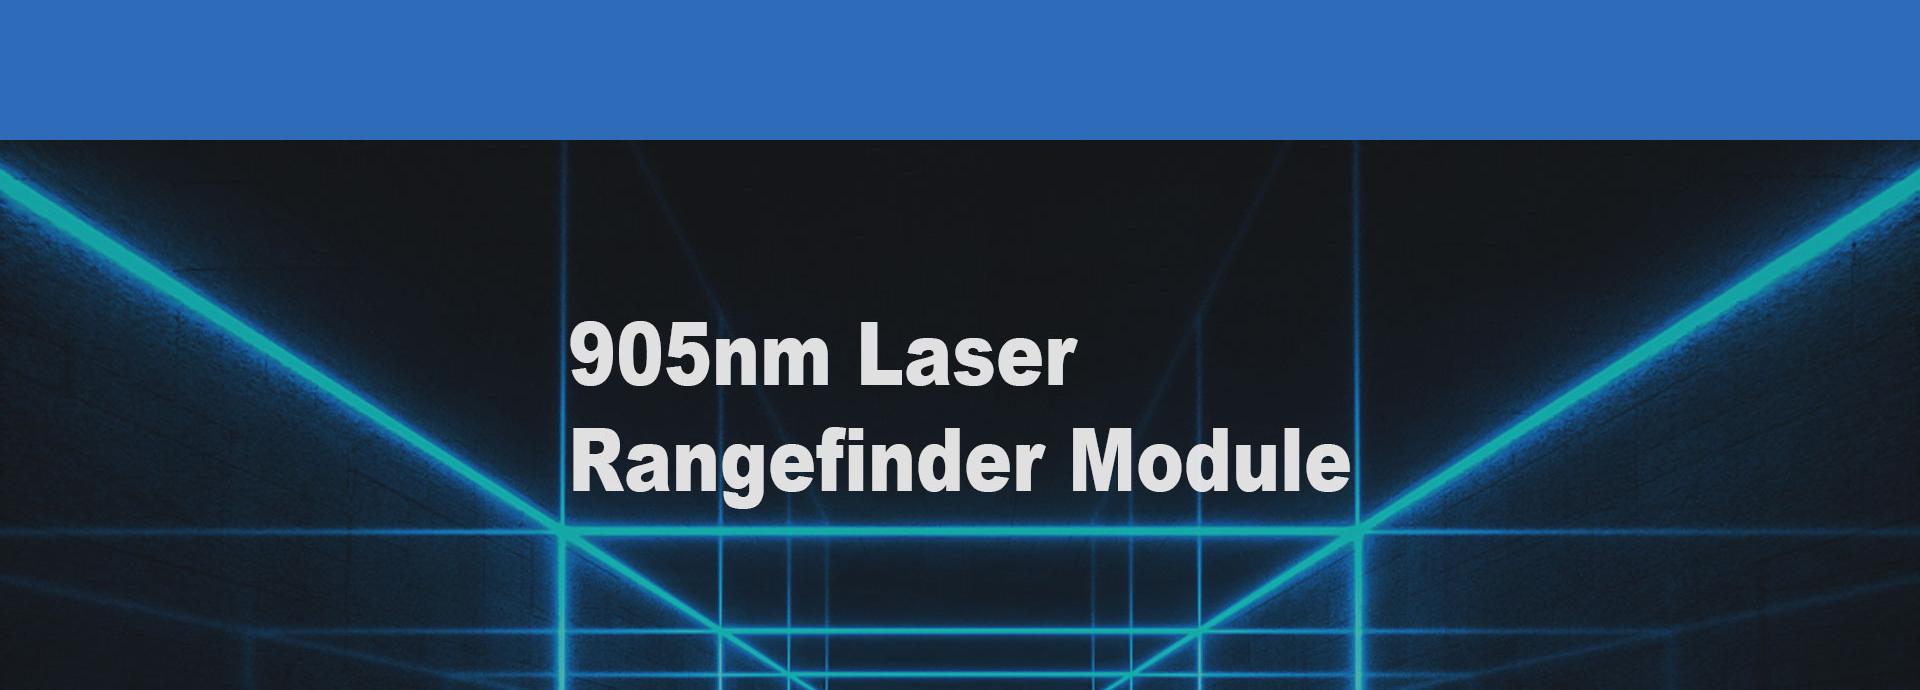 1200m Rangefinder Module